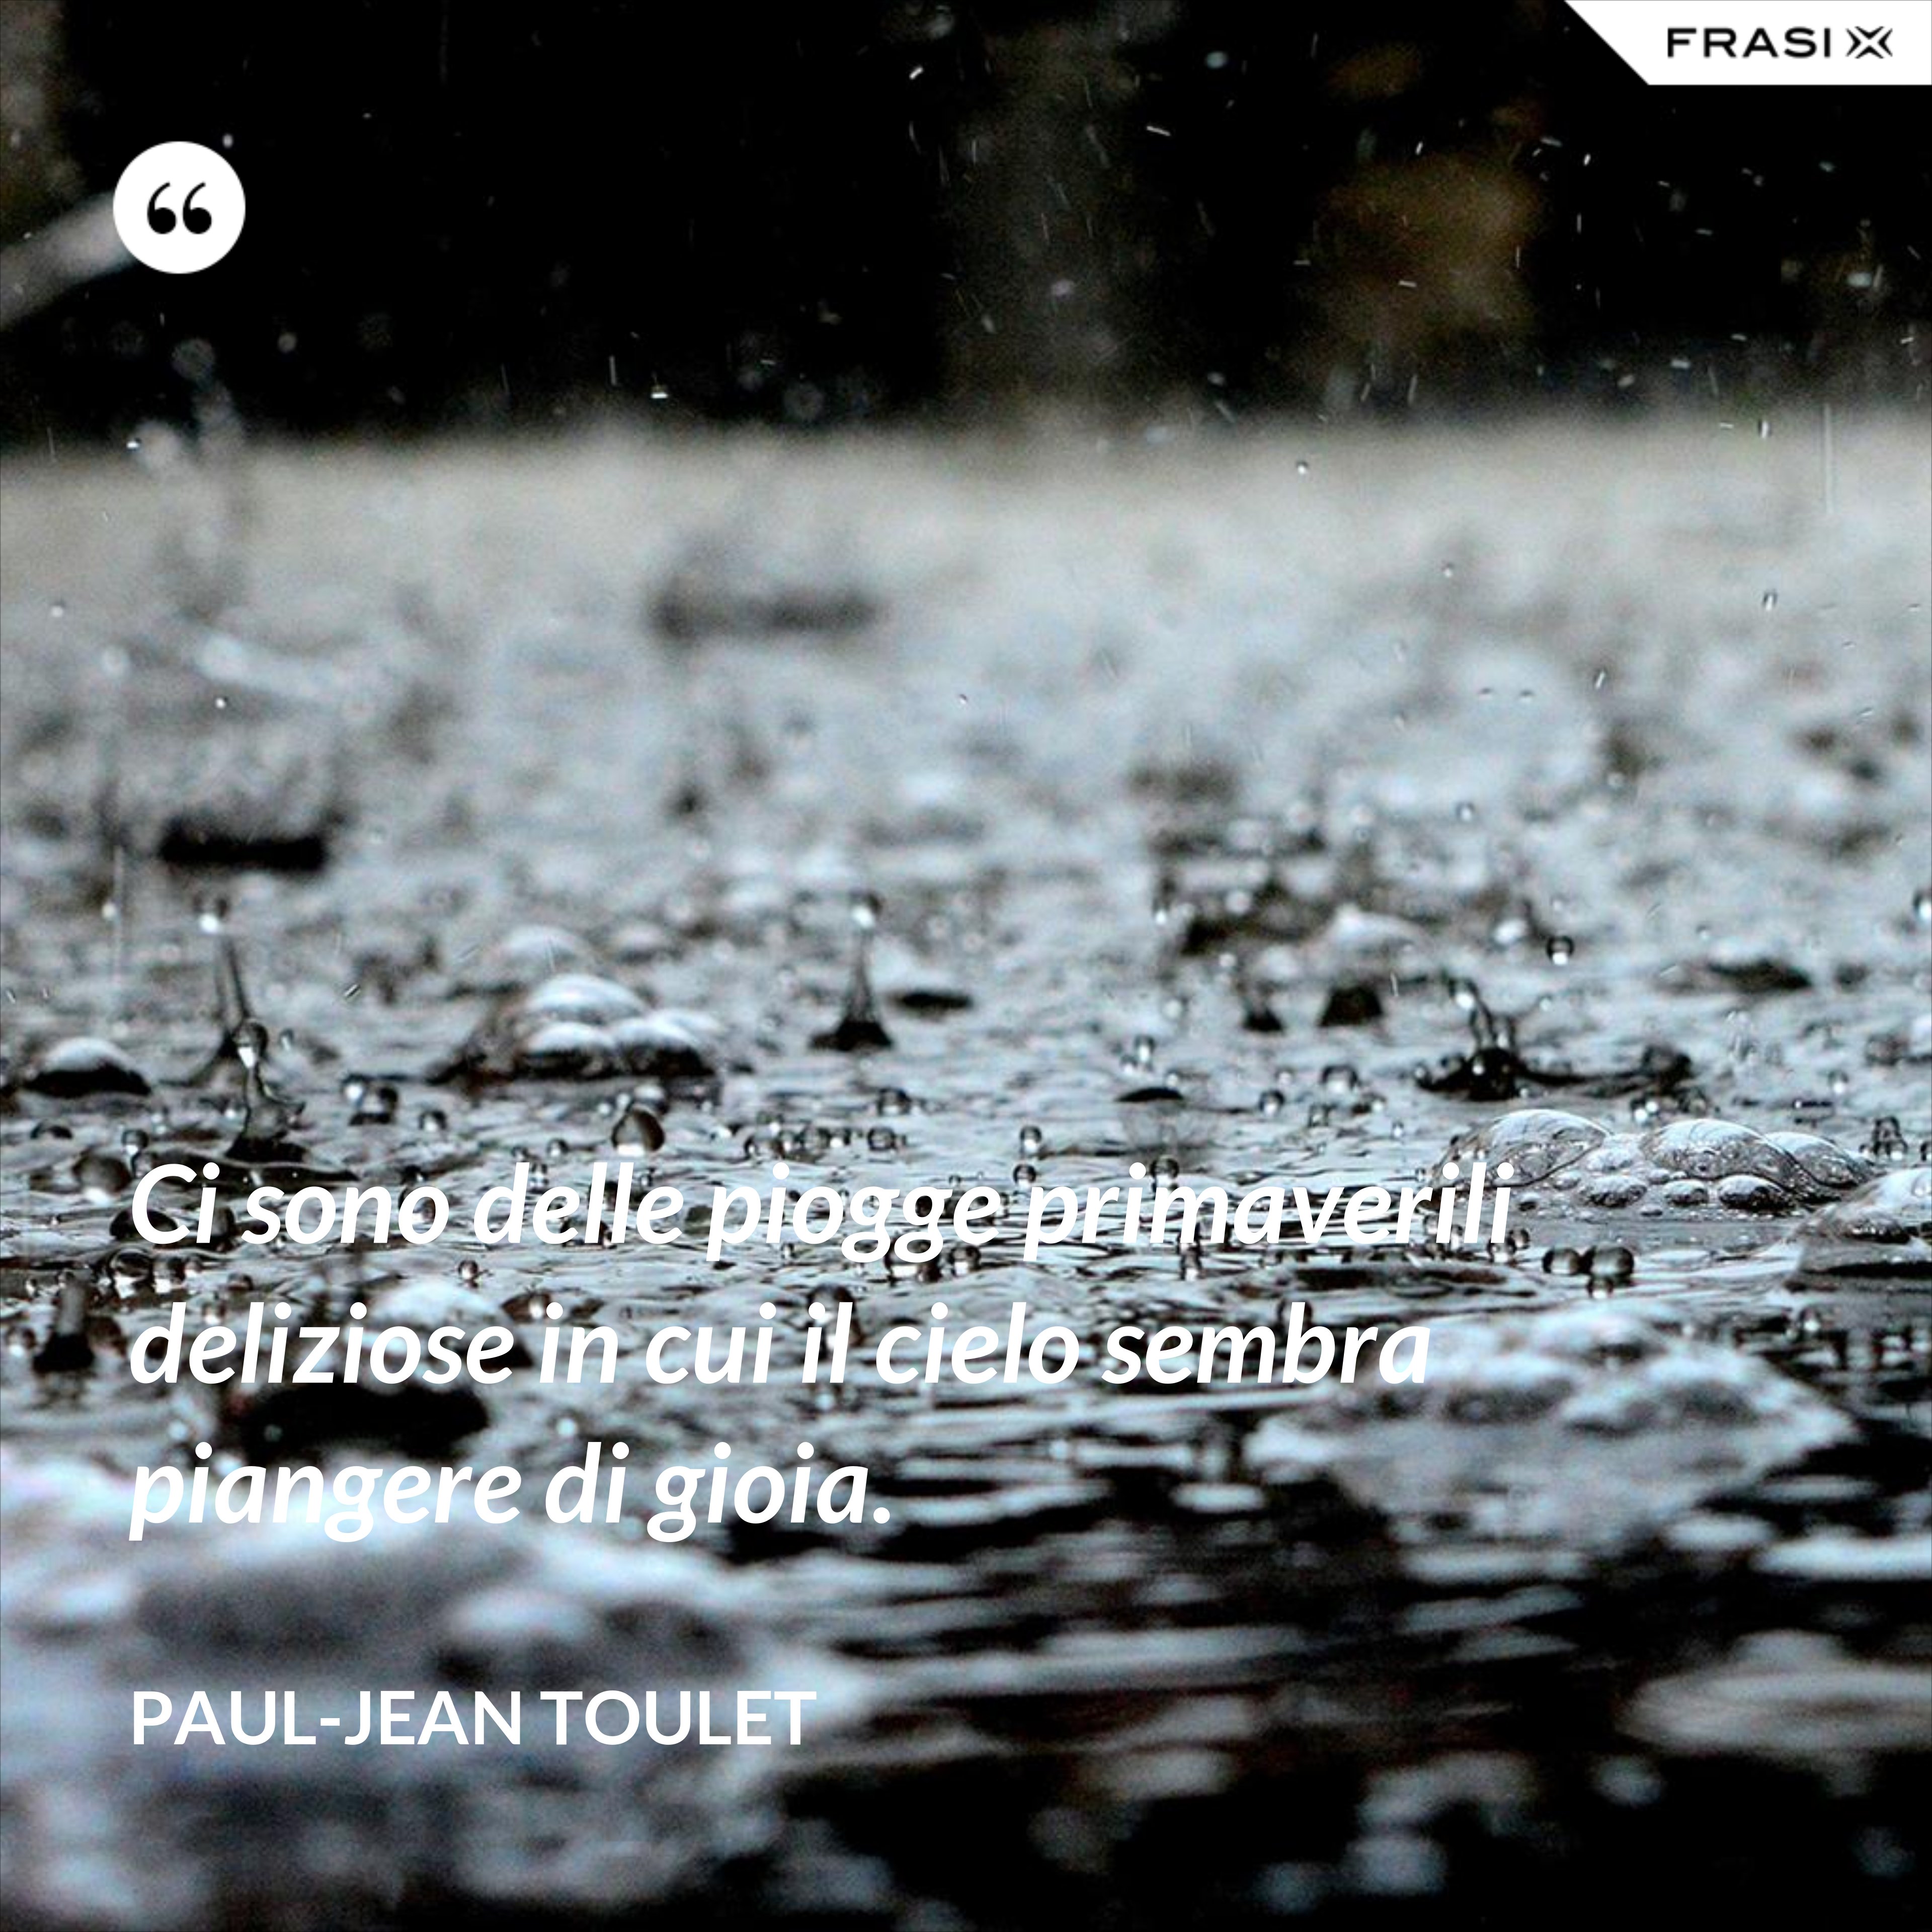 Ci sono delle piogge primaverili deliziose in cui il cielo sembra piangere di gioia. - Paul-Jean Toulet